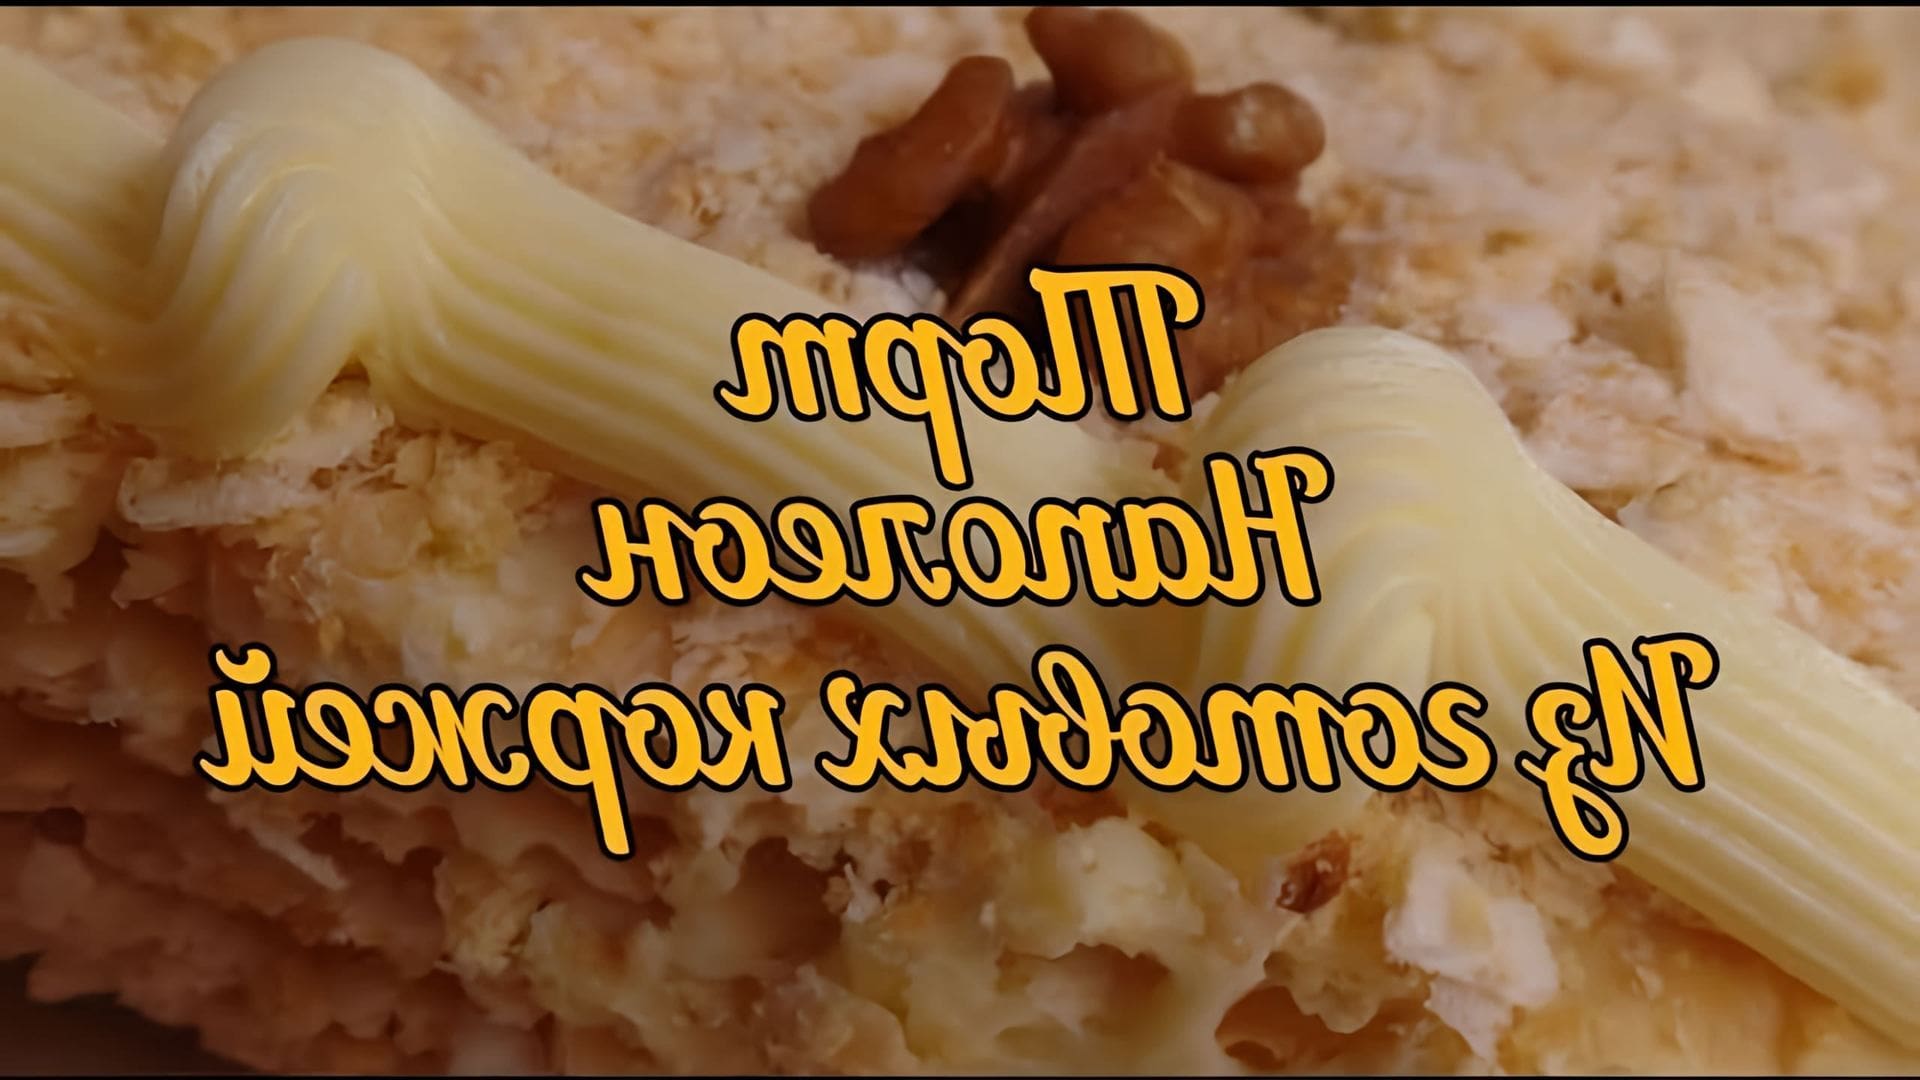 В этом видео-ролике будет показан рецепт приготовления торта "Наполеон" из готовых коржей с кремом на сгущенном молоке